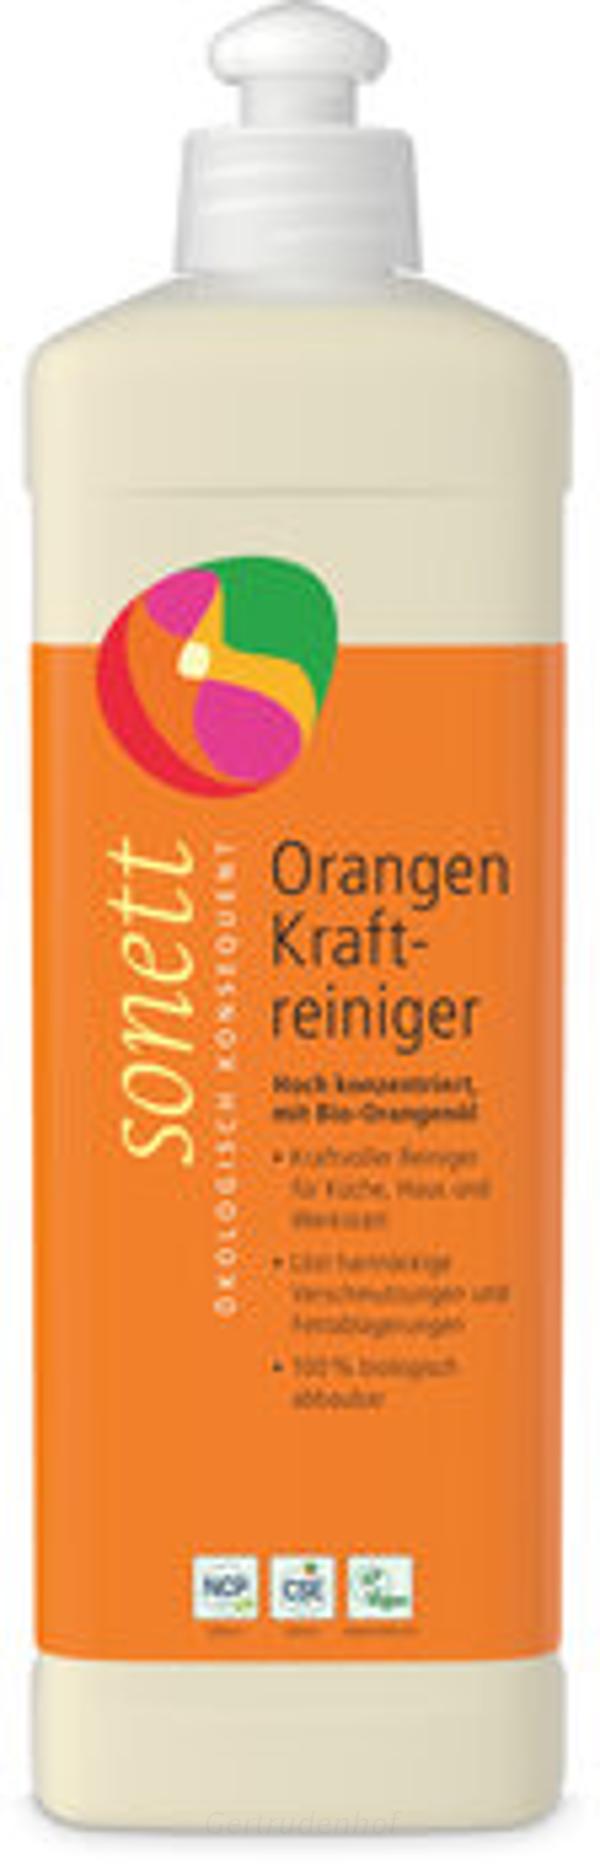 Produktfoto zu Orangenkraftreiniger 500ml SNT